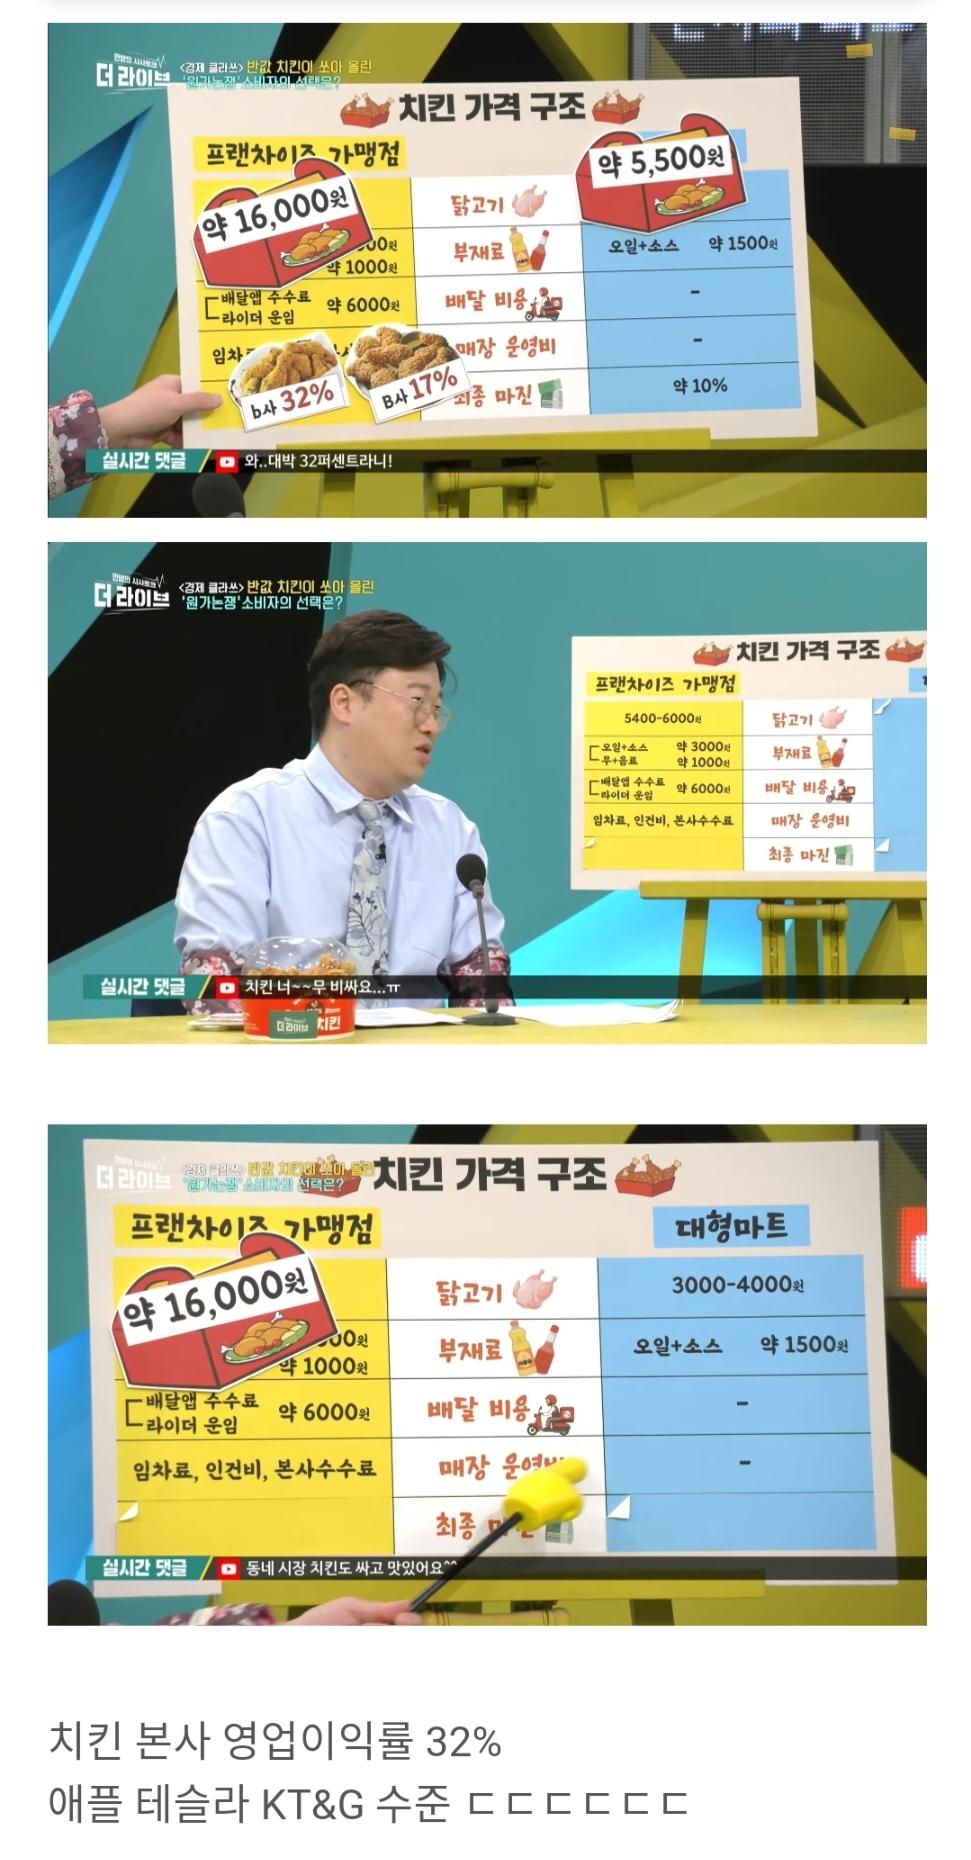 (펌) KBS 치킨 원가 16000원 본사 이익률 32%